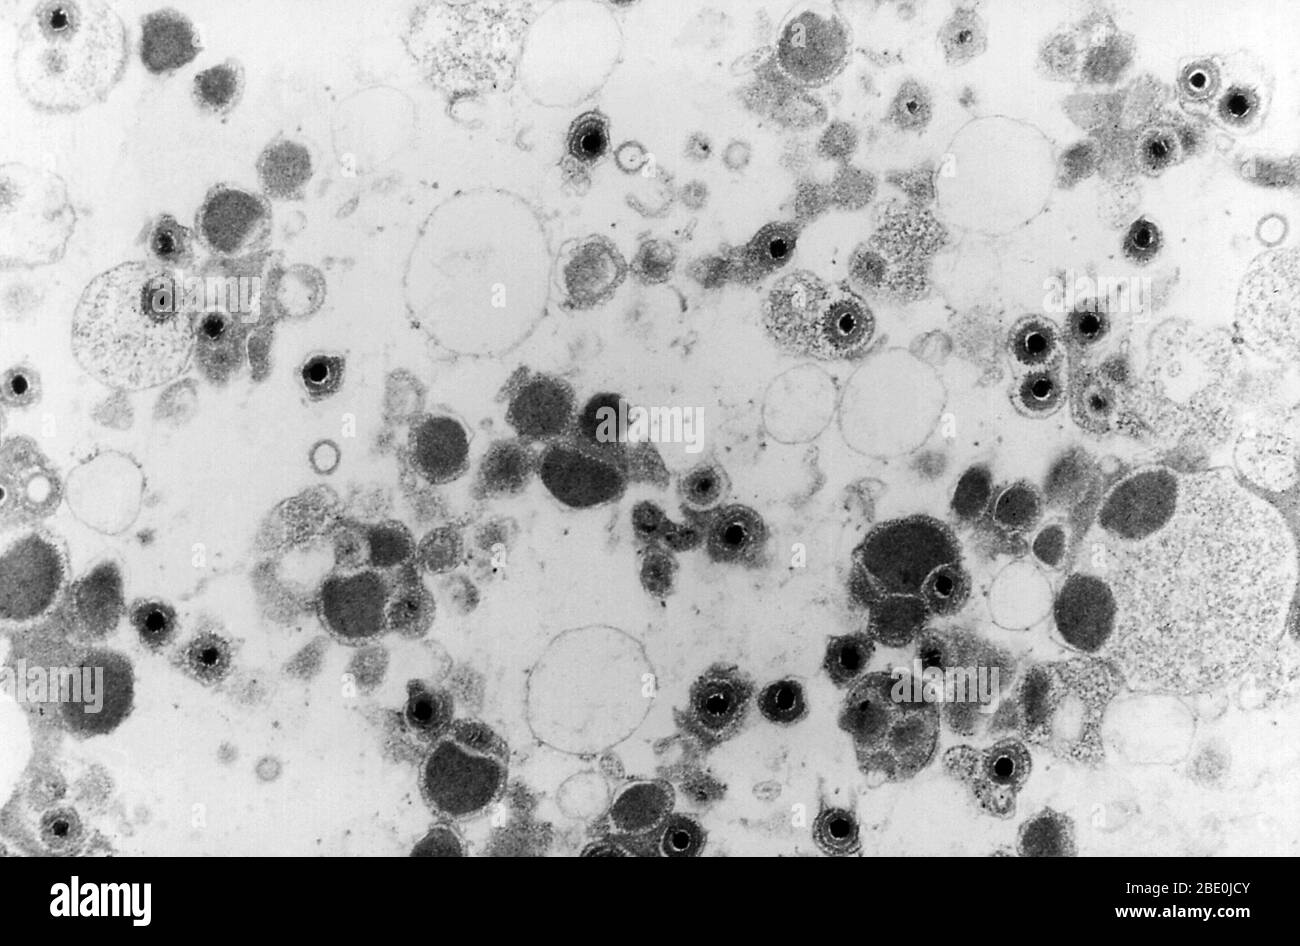 La micrografia elettronica a trasmissione (TEM) mostra un certo numero di virioni citomegalovirus presenti in un campione di tessuto sconosciuto. Il citomegalovirus (CMV) è un genere di virus dell'ordine Herpesvirales, appartenente alla famiglia Herpesviridae, appartenente alla sottofamiglia Betaherpesvirinae. Gli esseri umani e le scimmie servono come ospiti naturali. Il citomegalovirus è un virus del DNA a doppio filamento (dsDNA). Attualmente, in questo genere sono presenti otto specie, tra cui la specie tipo, il citomegalovirus umano (HCMV, herpesvirus umano 5, HHV-5), che è la specie che infetta gli esseri umani. Nella letteratura medica, la maggior parte delle menzioni di CMV senza ulteriori specifiche Foto Stock